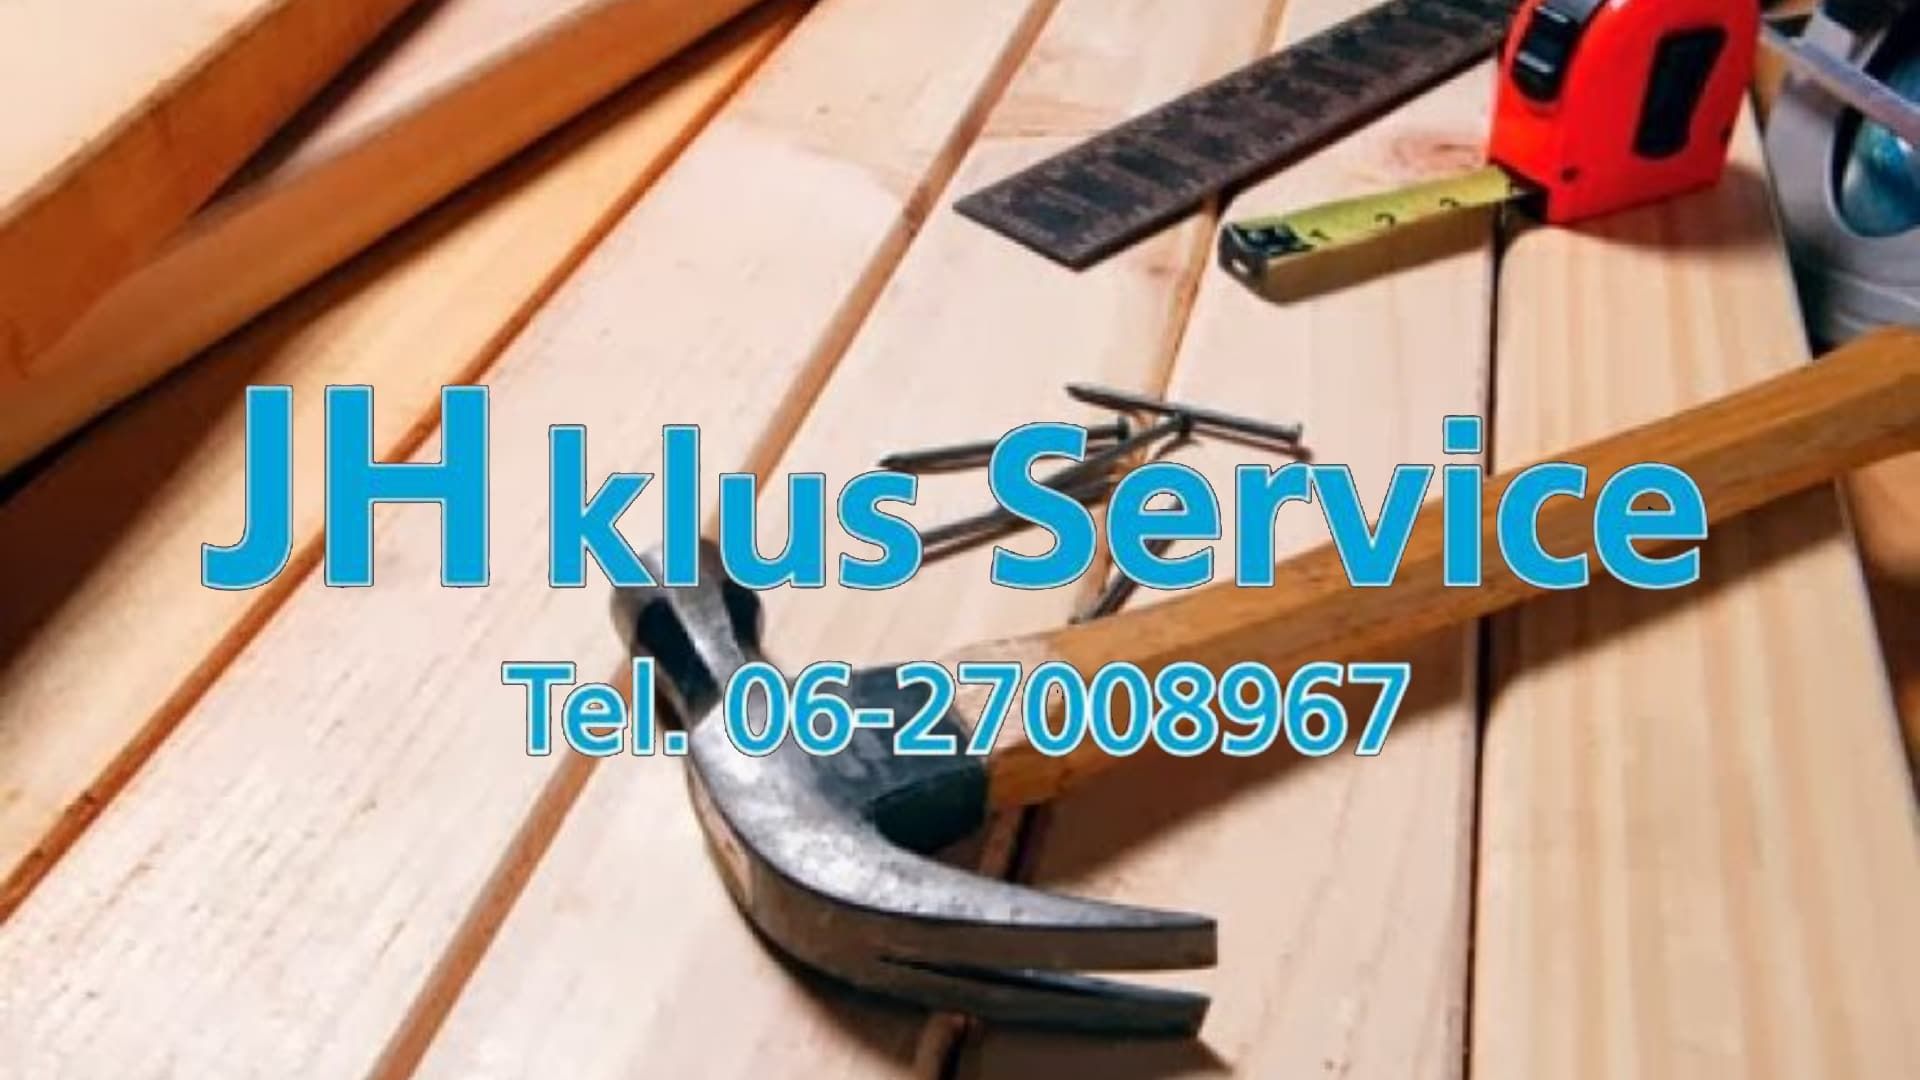 JH Klus Service Tynaarlo